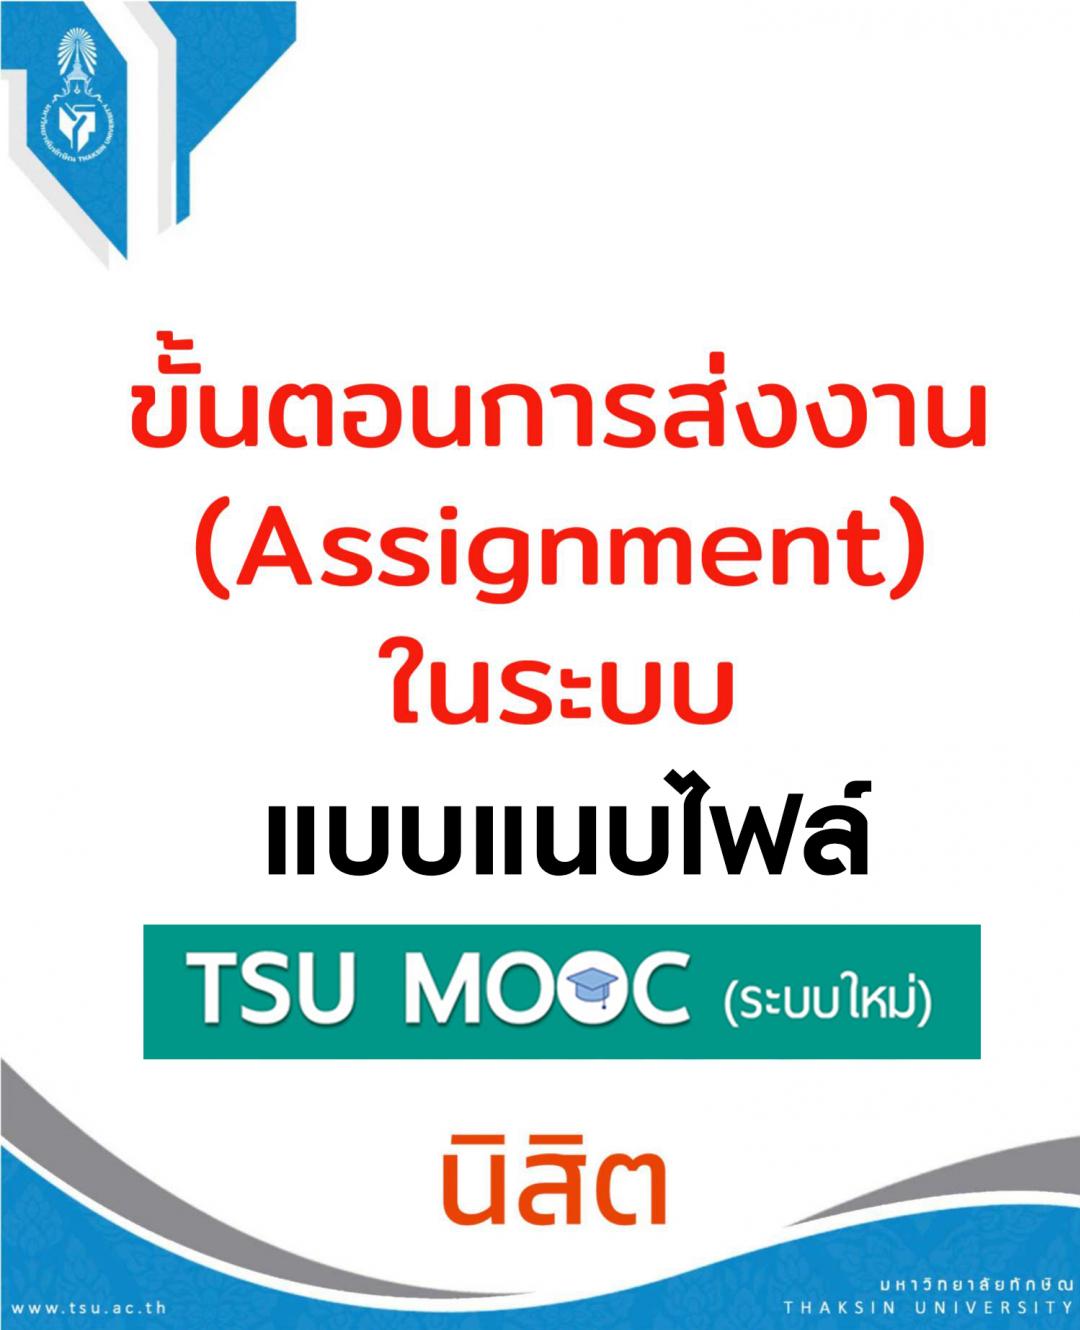 ขั้นตอนการส่งงานบนระบบ TSU MOOCs (ระบบใหม่) แบบแนบไฟล์